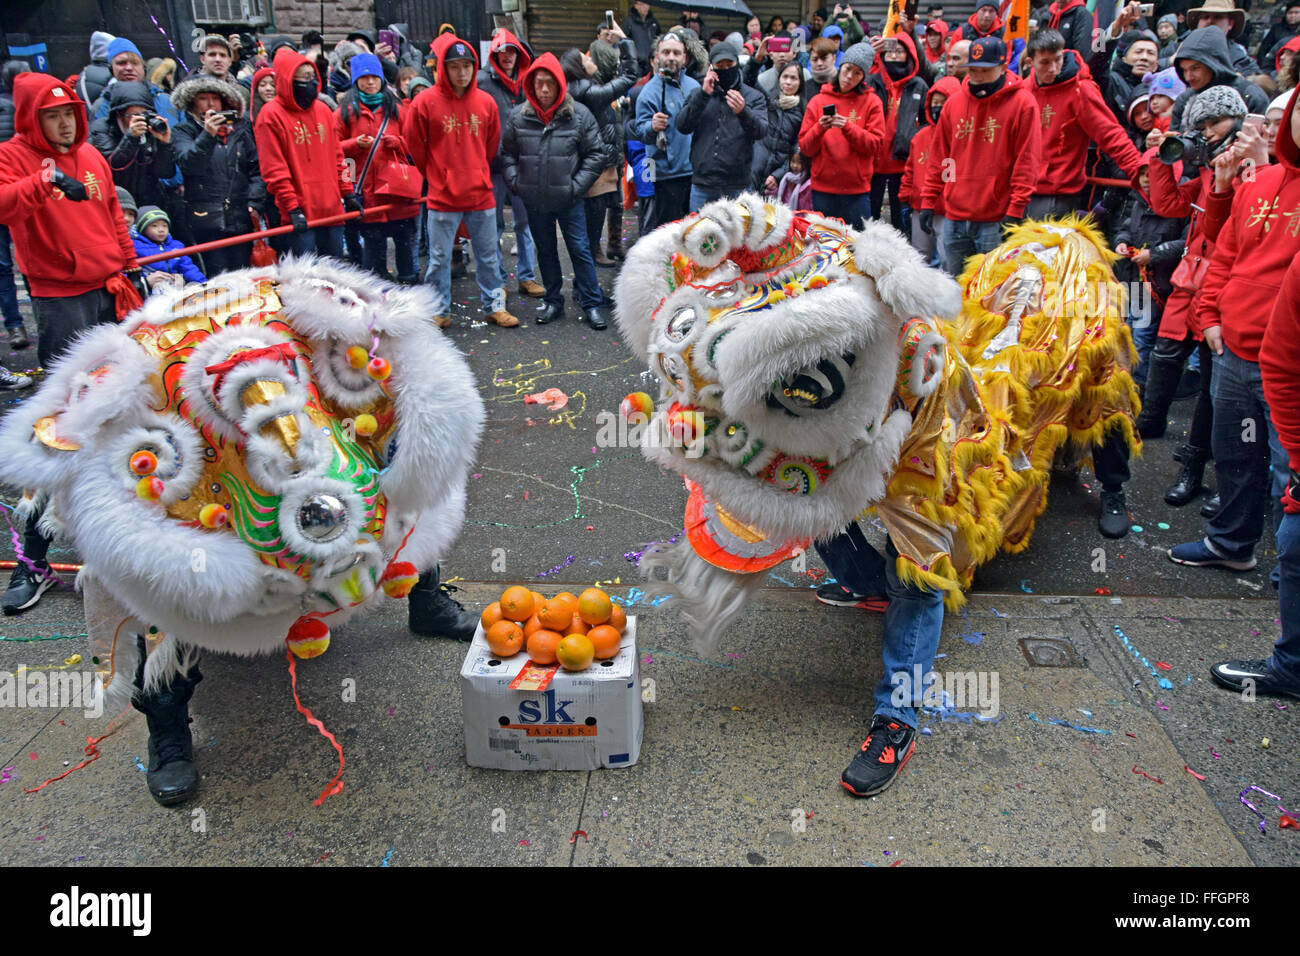 Löwentänzer tanzen für Wohlstand auf der Doyers Street in New York City Chinatown bei der 2016 Lunar New Year's Day Parade. Stockfoto